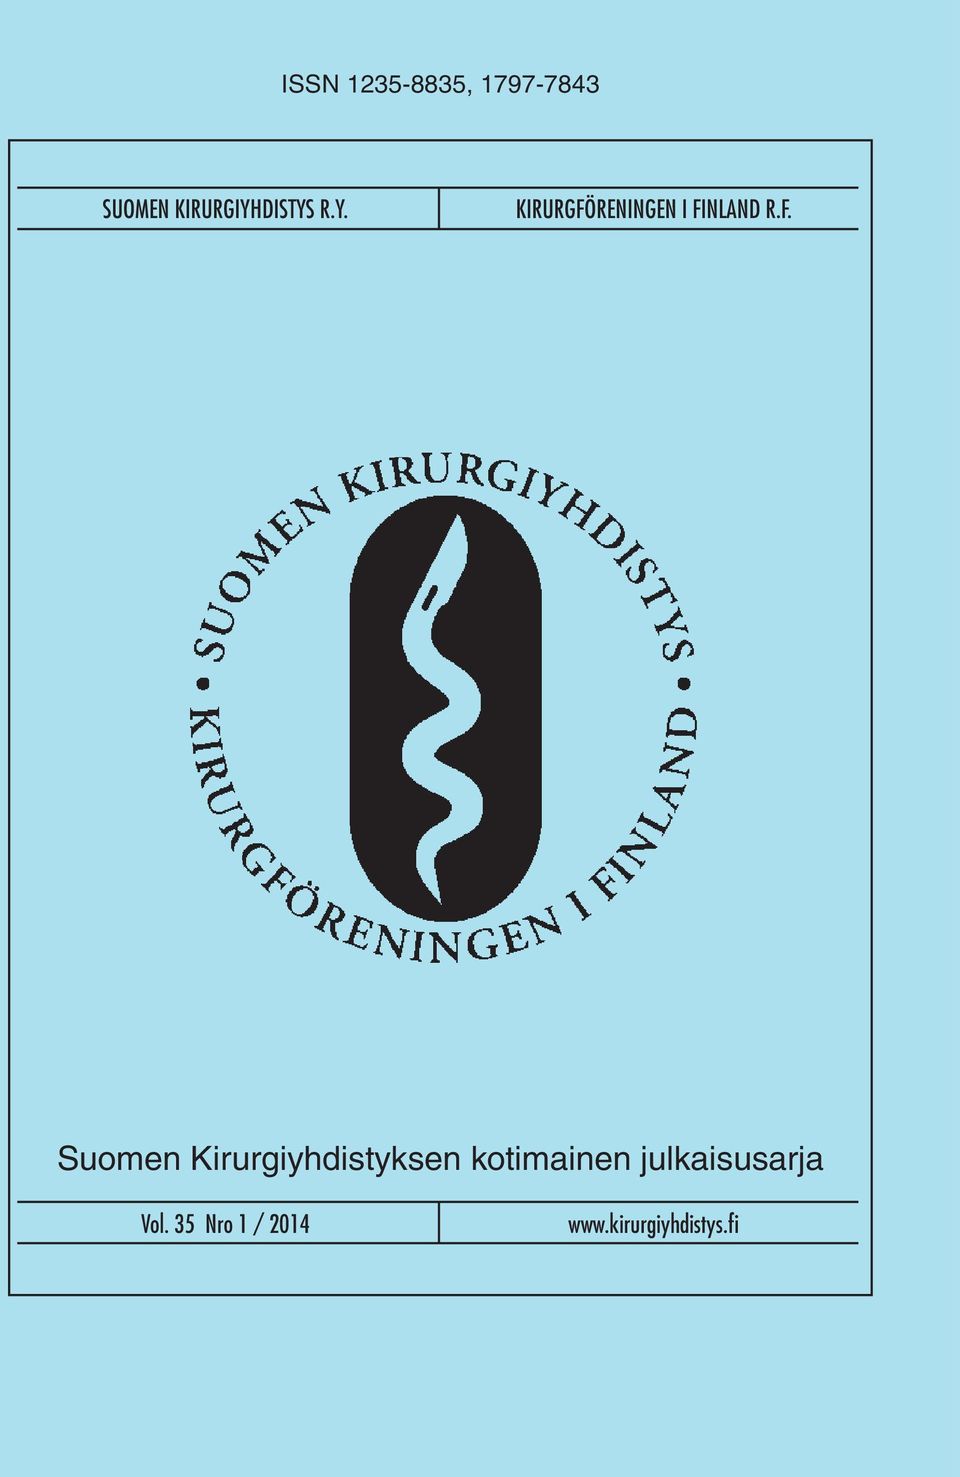 F. Suomen Kirurgiyhdistyksen kotimainen